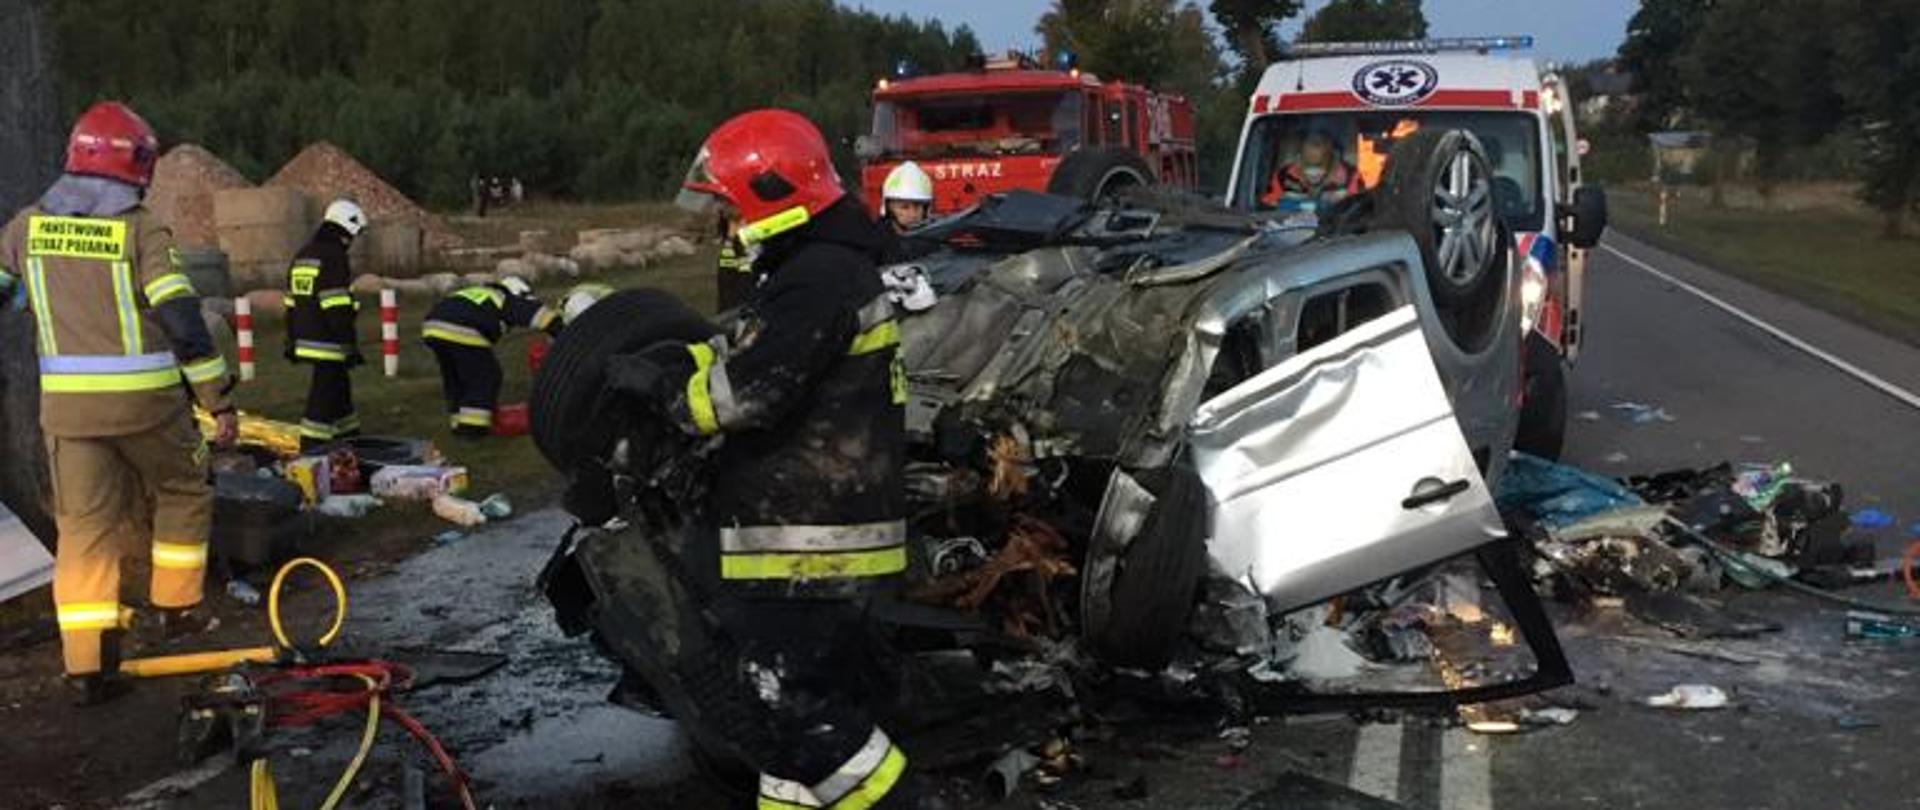 Zdjęcie przedstawia zniszczony samochód po wypadku, służby ratownicze podczas prowadzonych zajęć